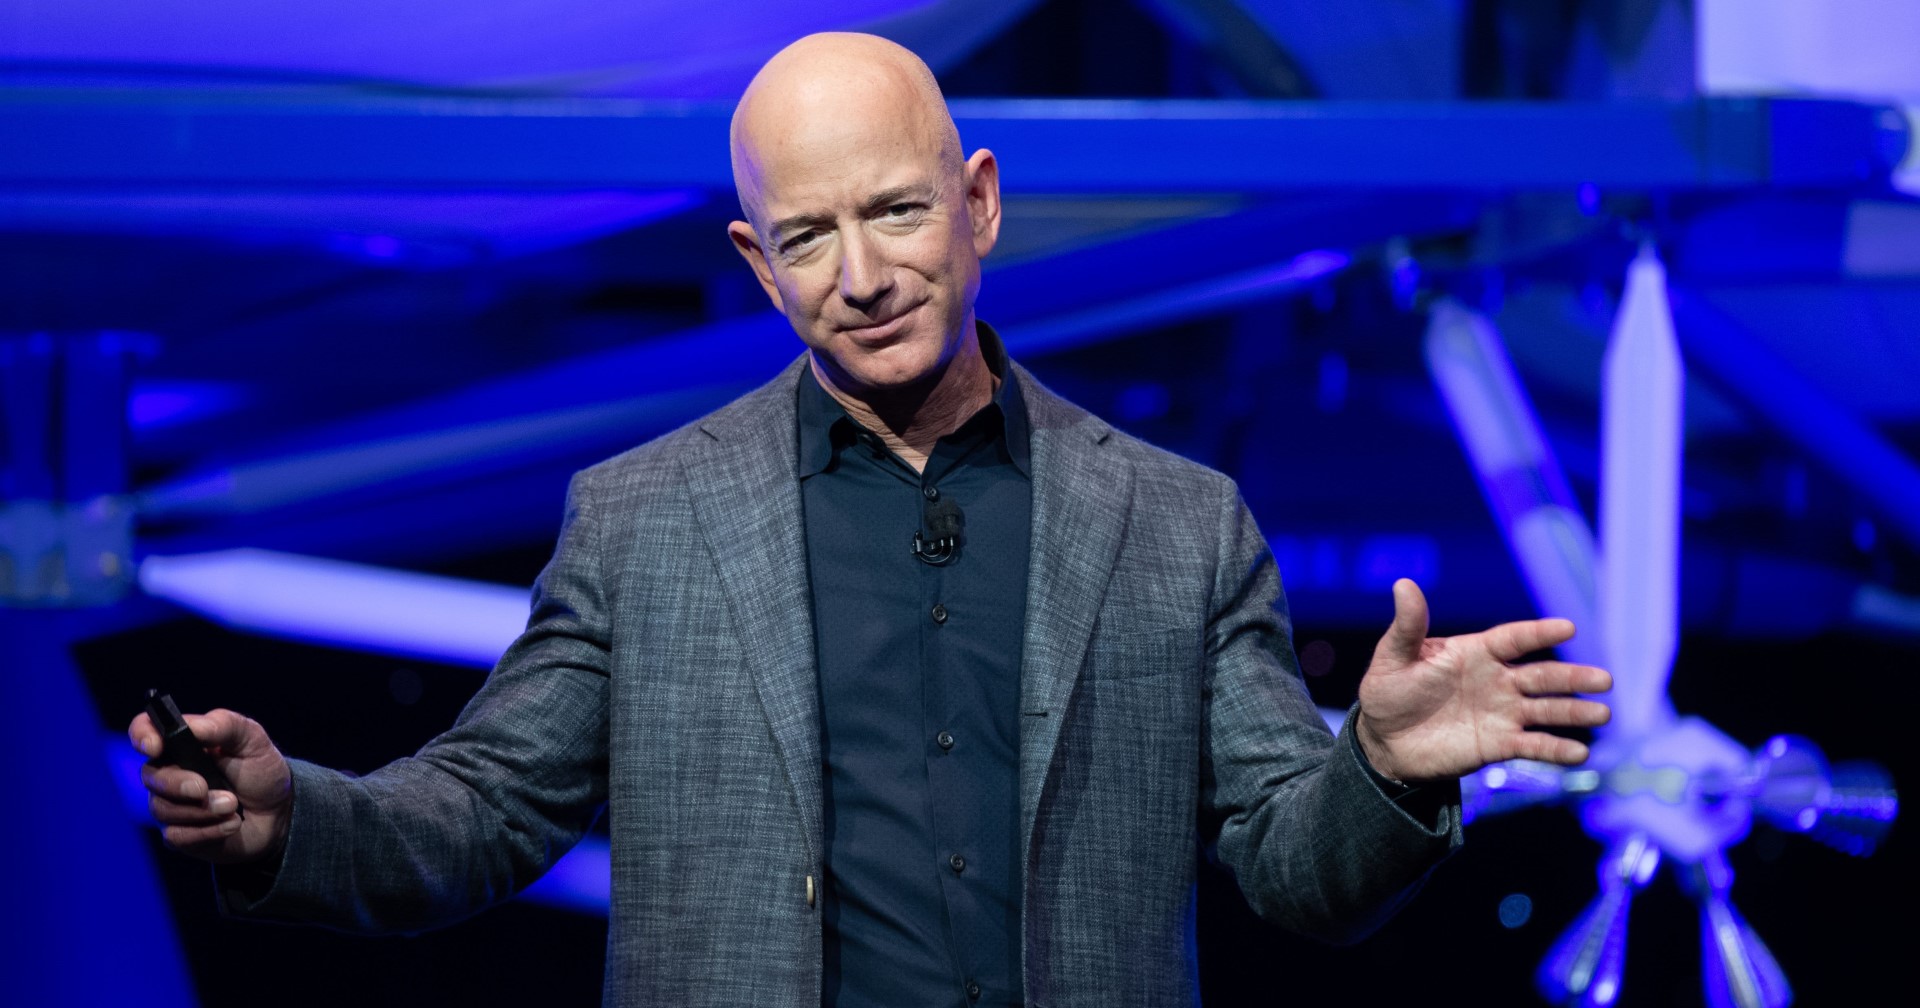 ผู้ถือหุ้น Amazon ยื่นฟ้องบริษัทและ Jeff Bezos กรณีทำสัญญา Project Kuiper โดยไม่สนคู่แข่ง